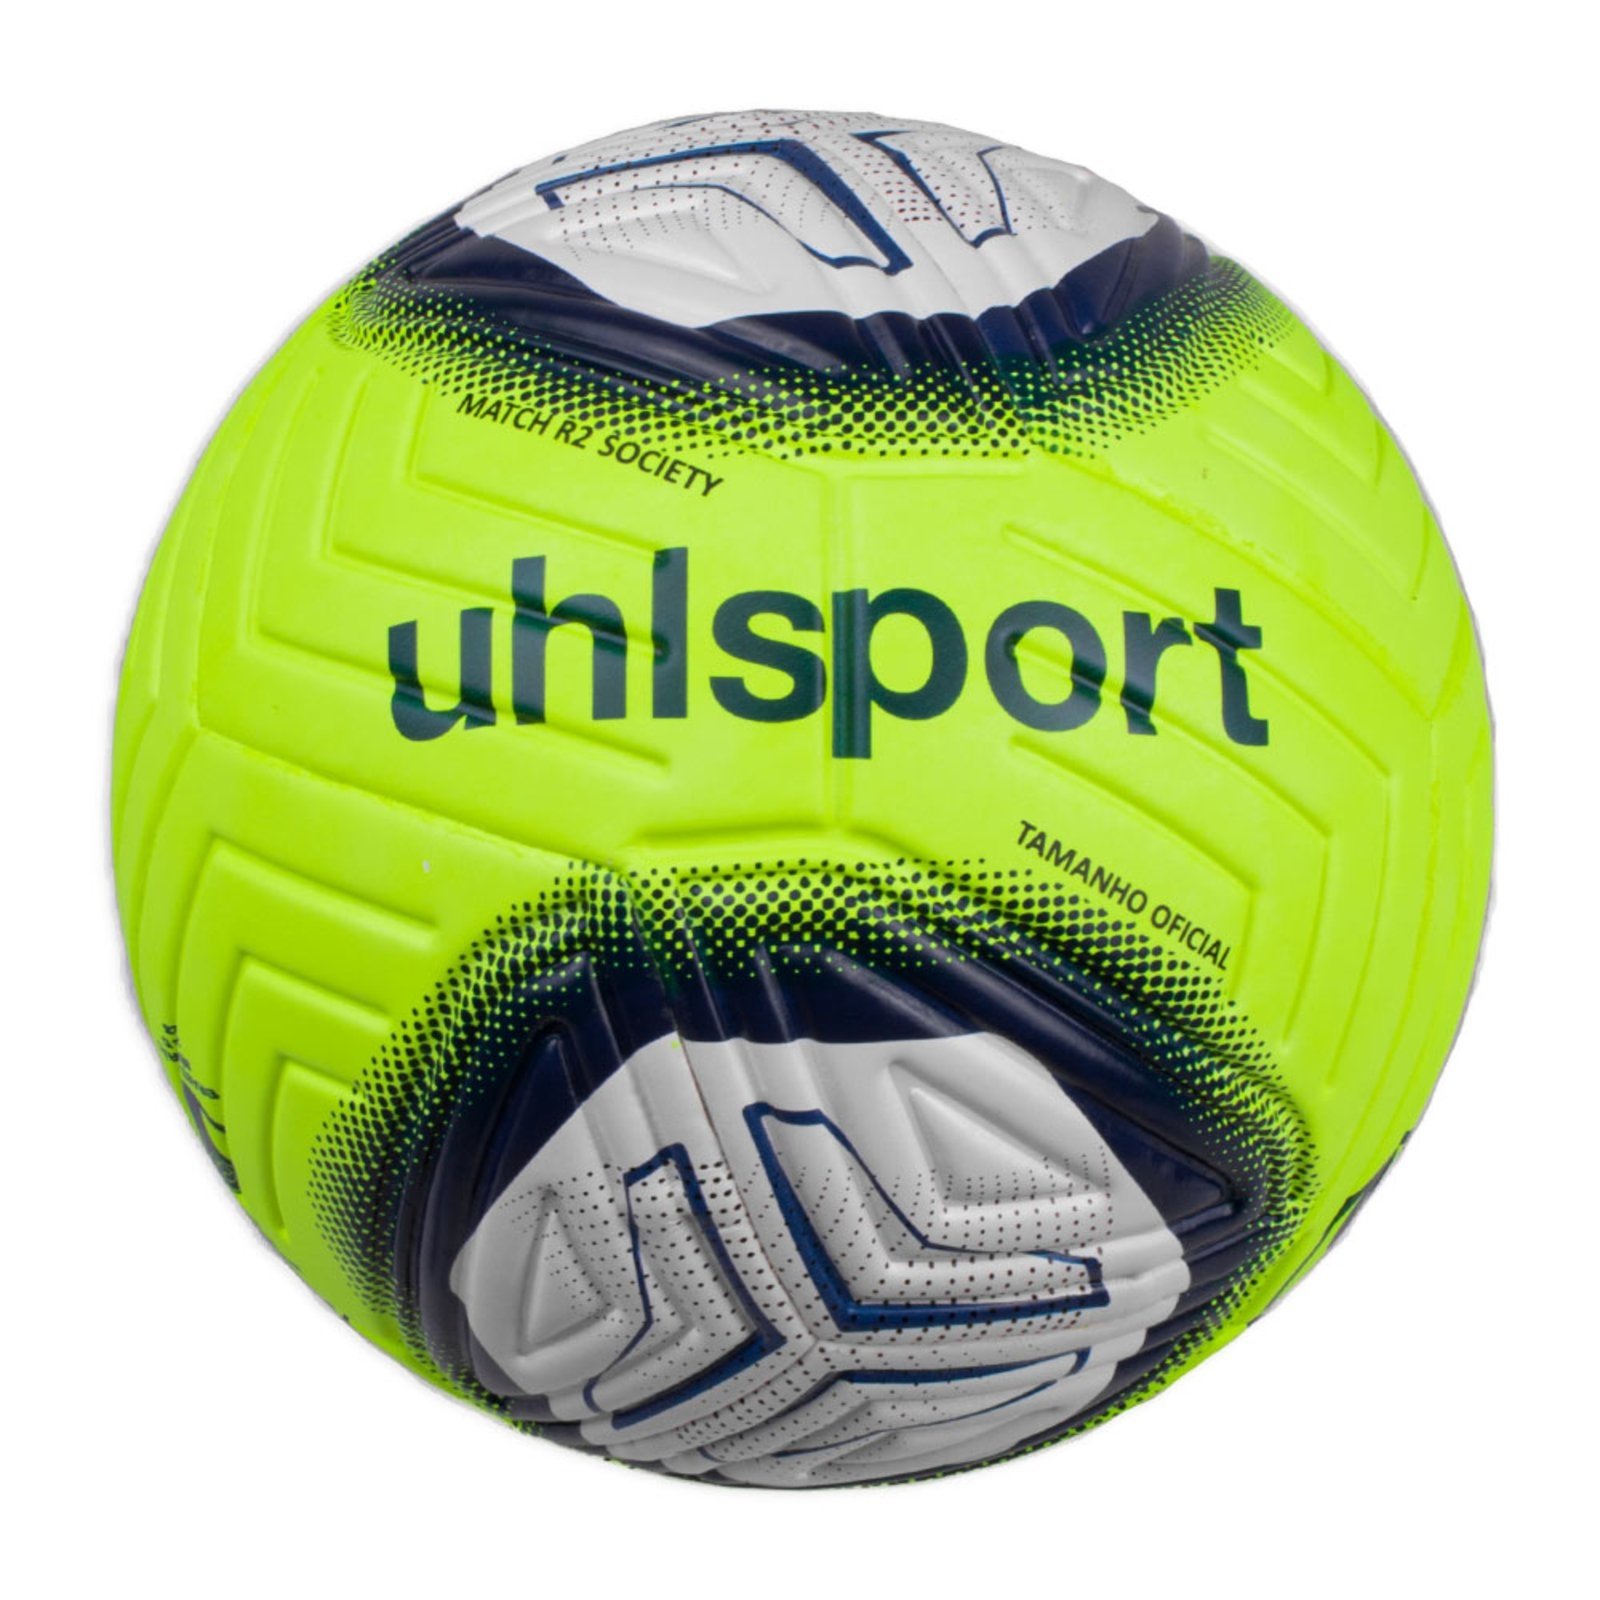 Bola de Campo Futebol uhlsport Match R2 Brasileirão - Bola de